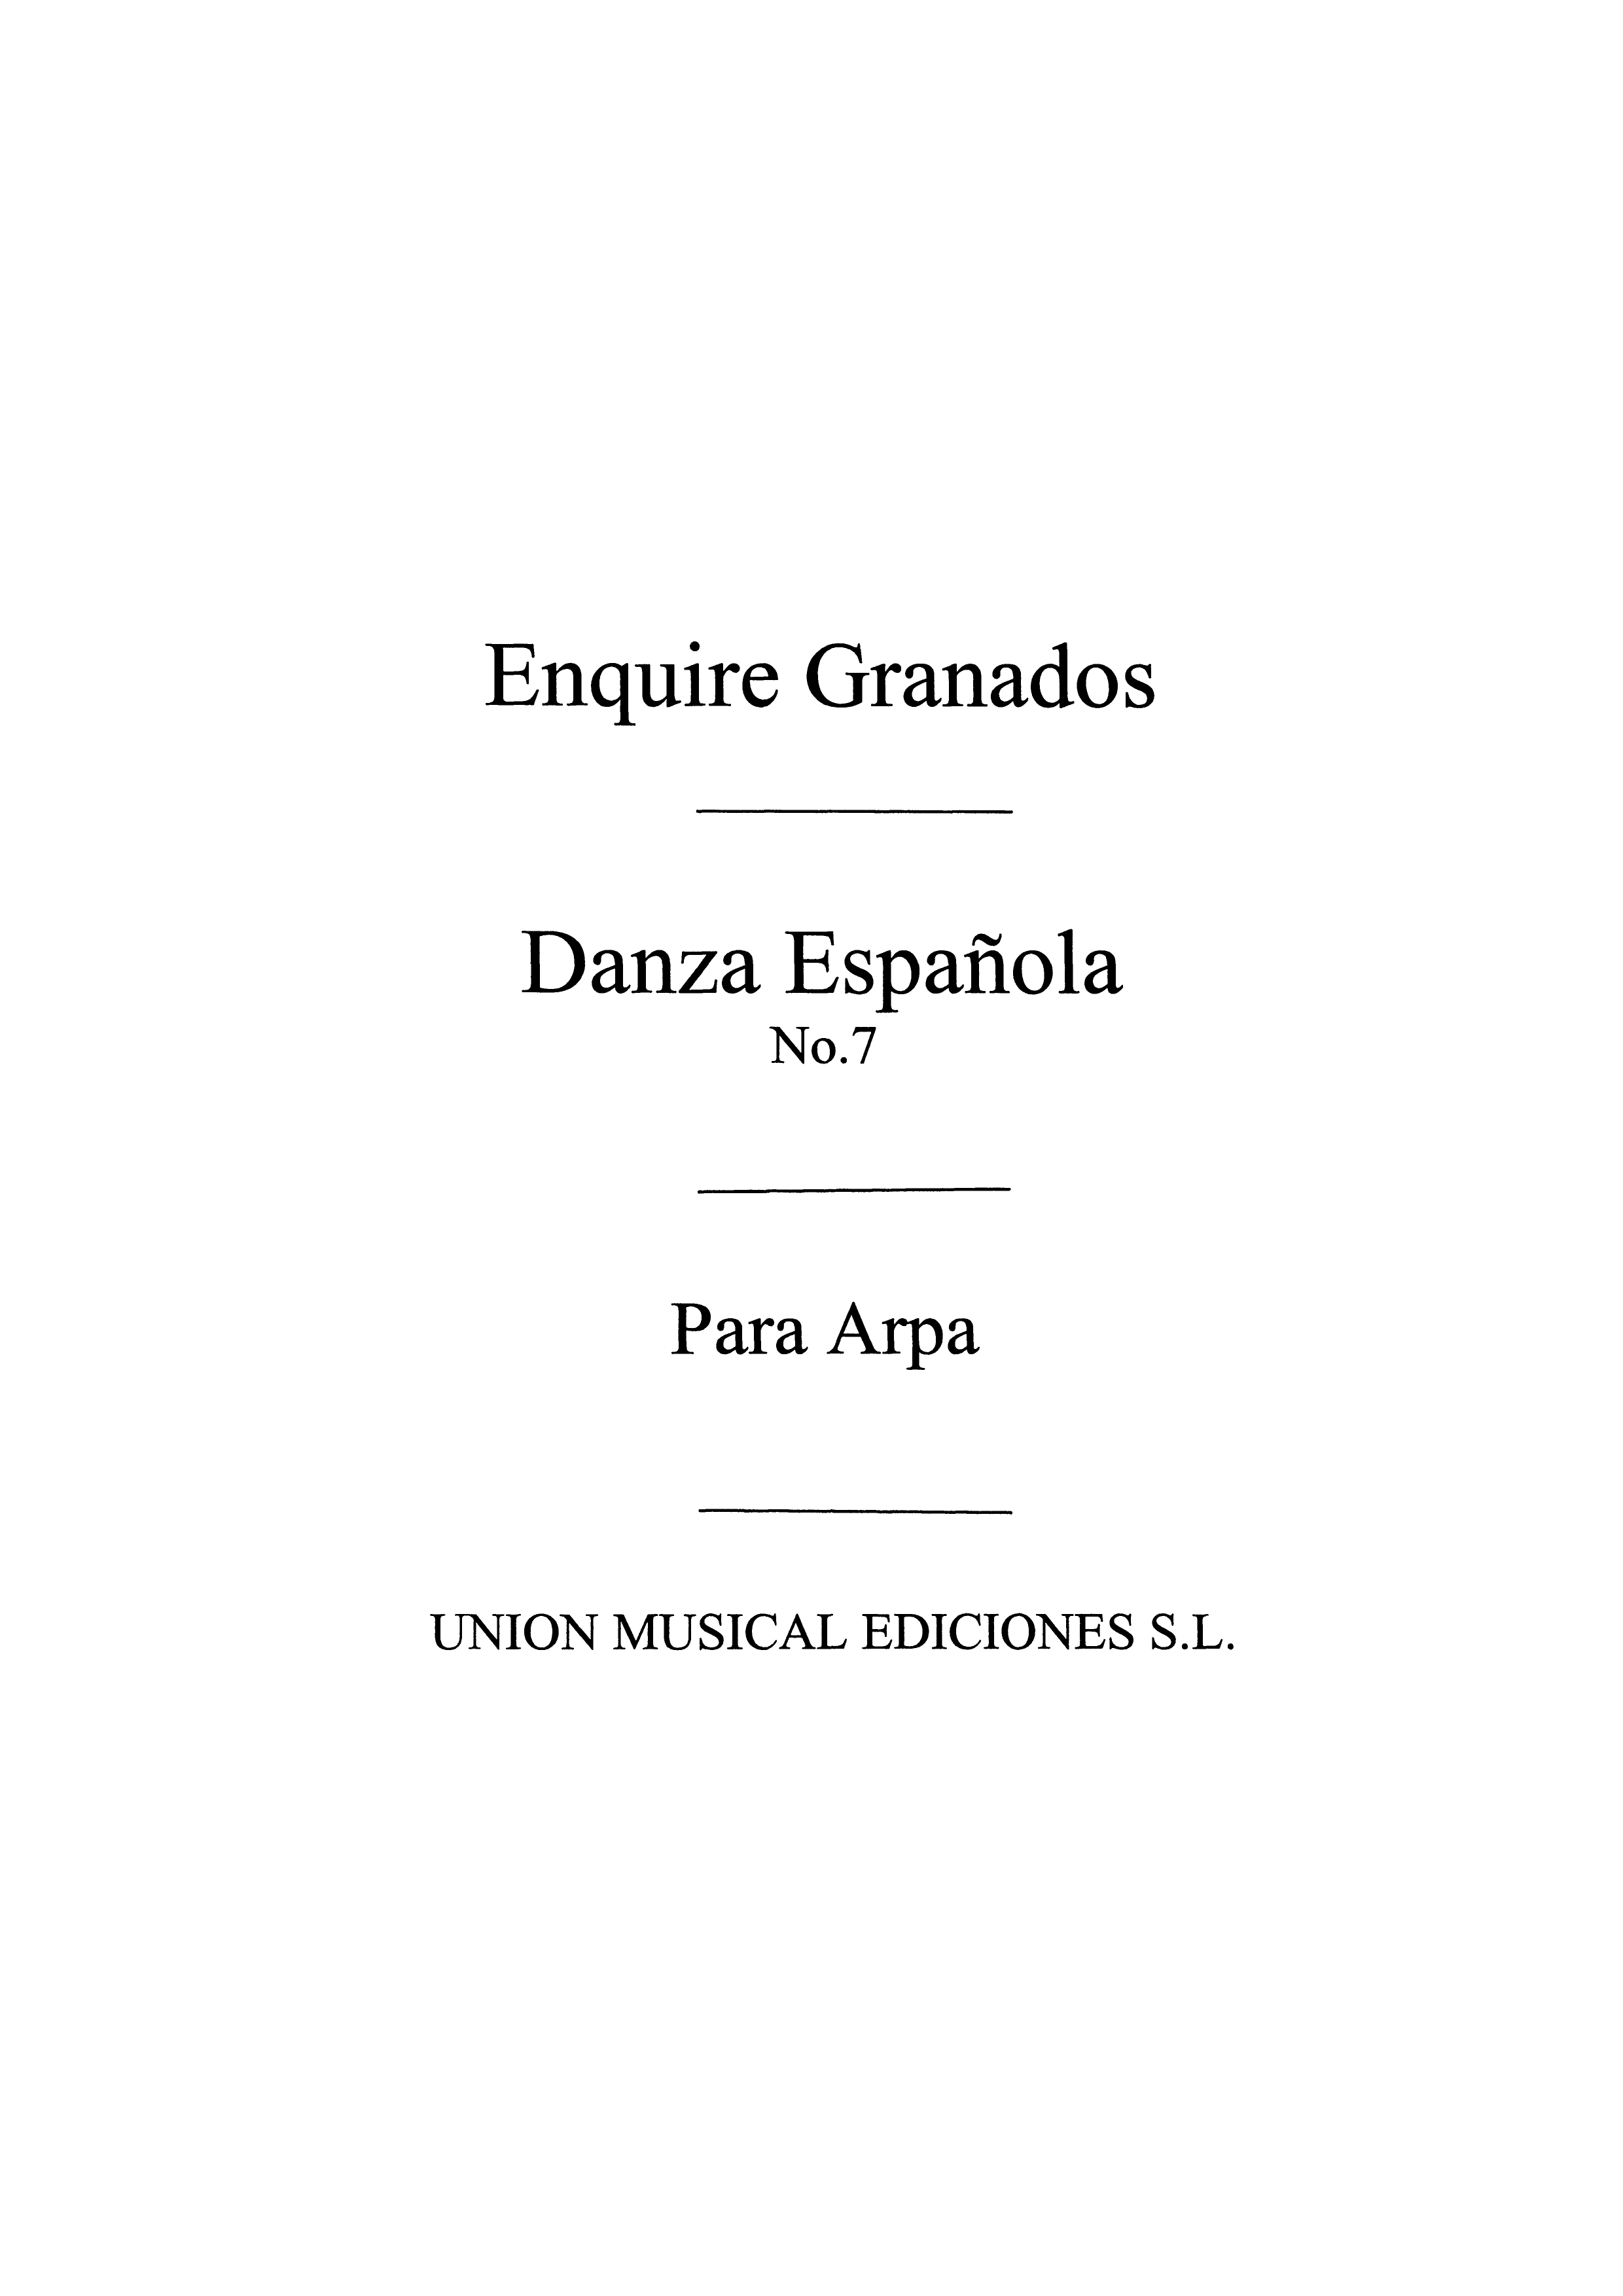 Enrique Granados: Danza Espanola No.7 Valenciana: Harp: Instrumental Work